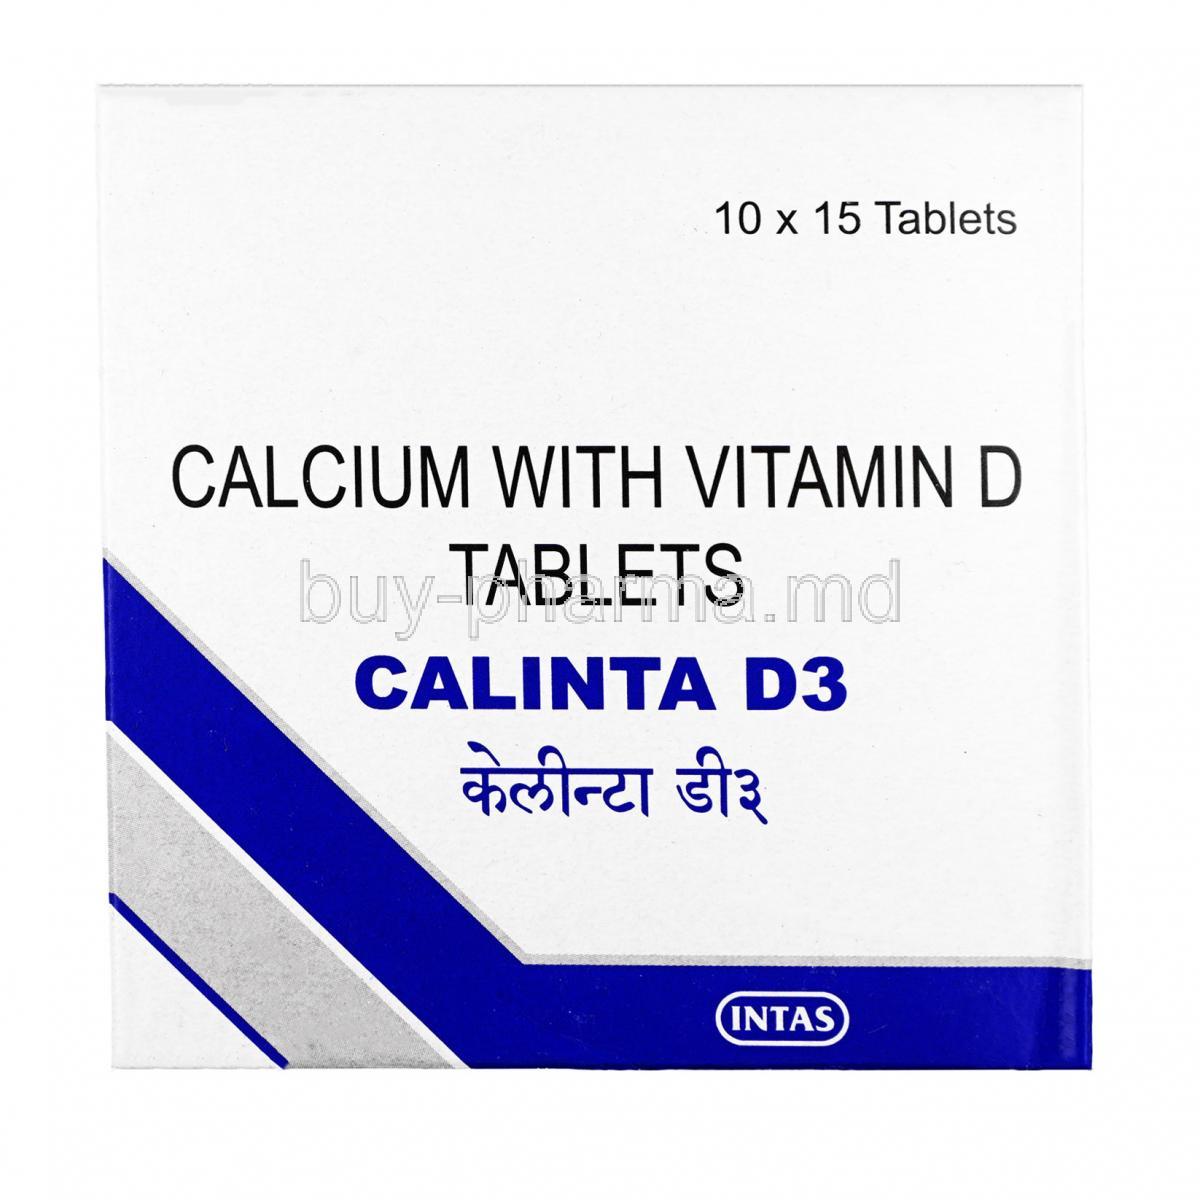 Calinta D3, Vitamin D3,Calcium, Tablet, box